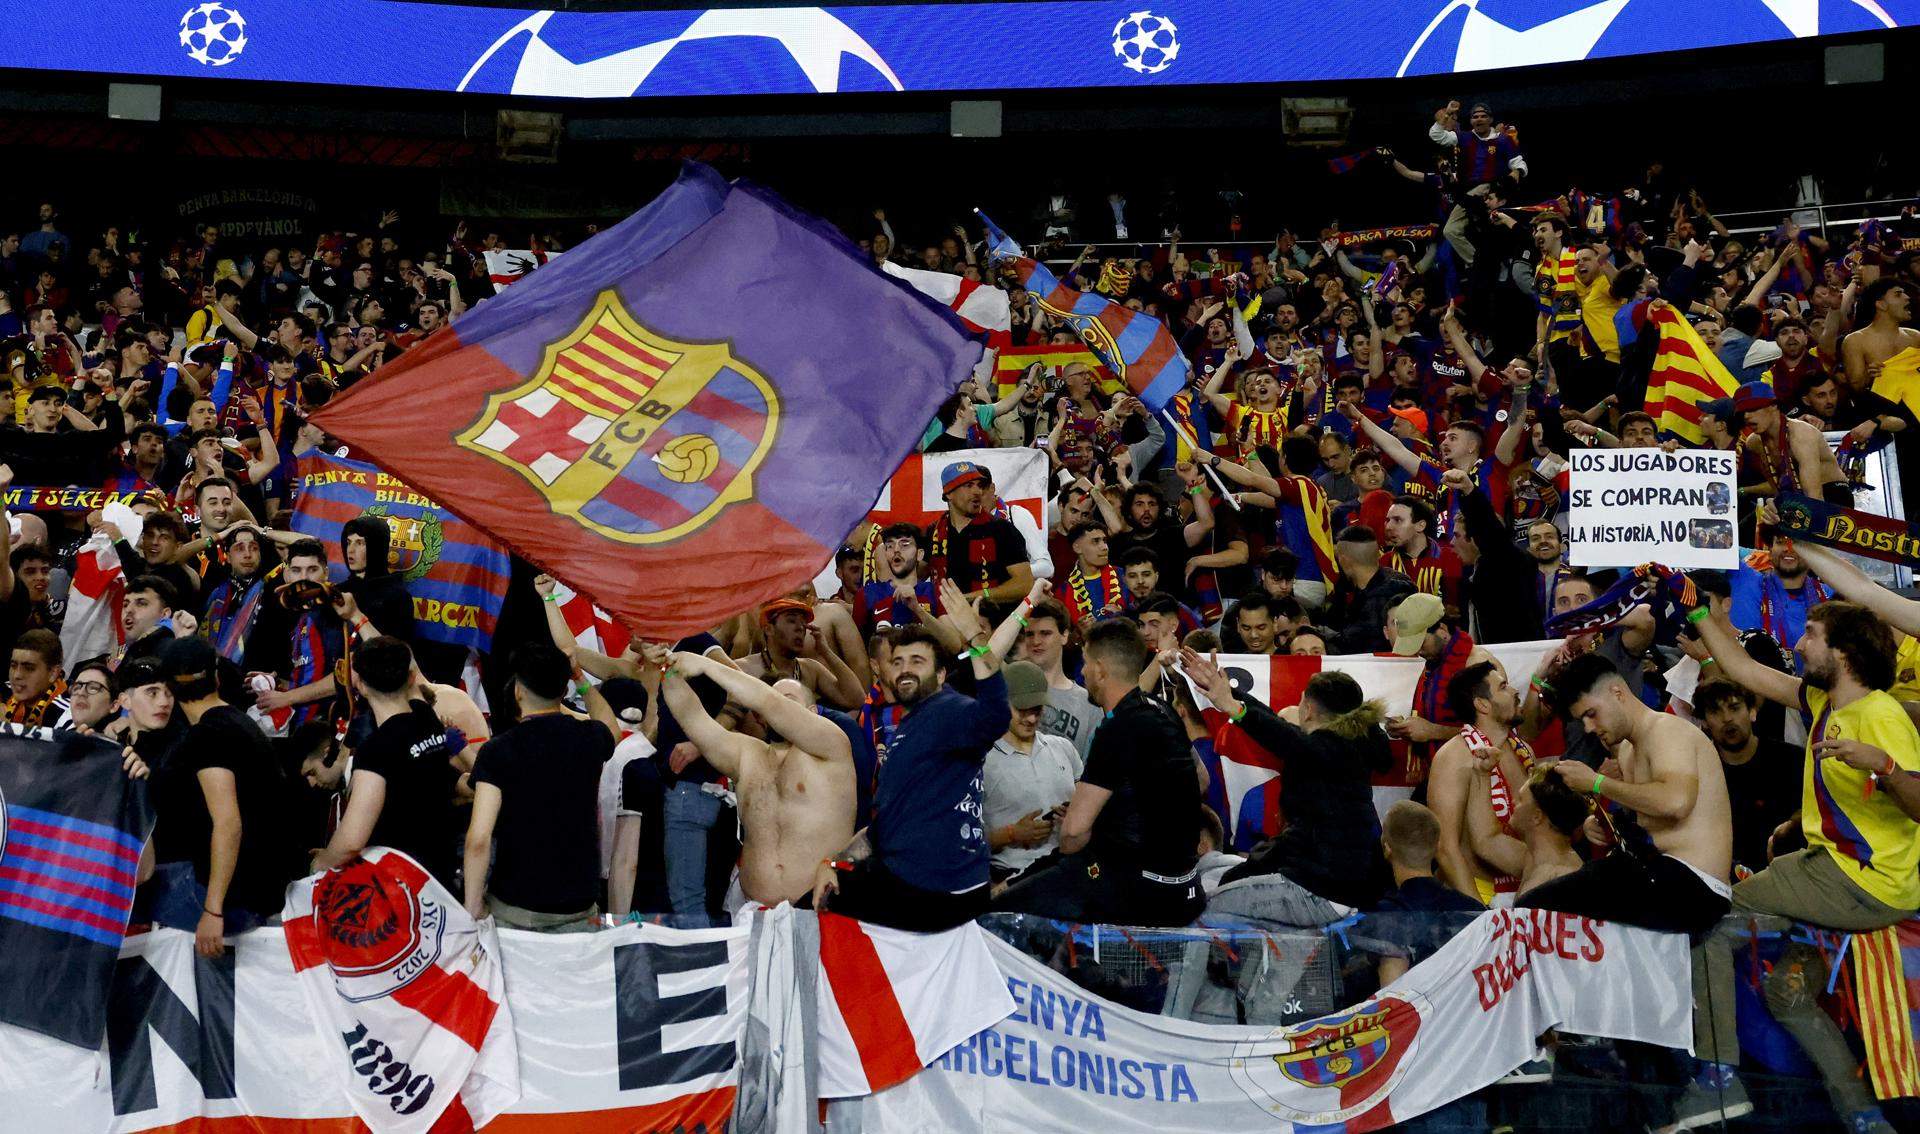 Detenidos dos aficionados del Barça por gritos racistas y saludos fascistas durante el PSG-FCB en París